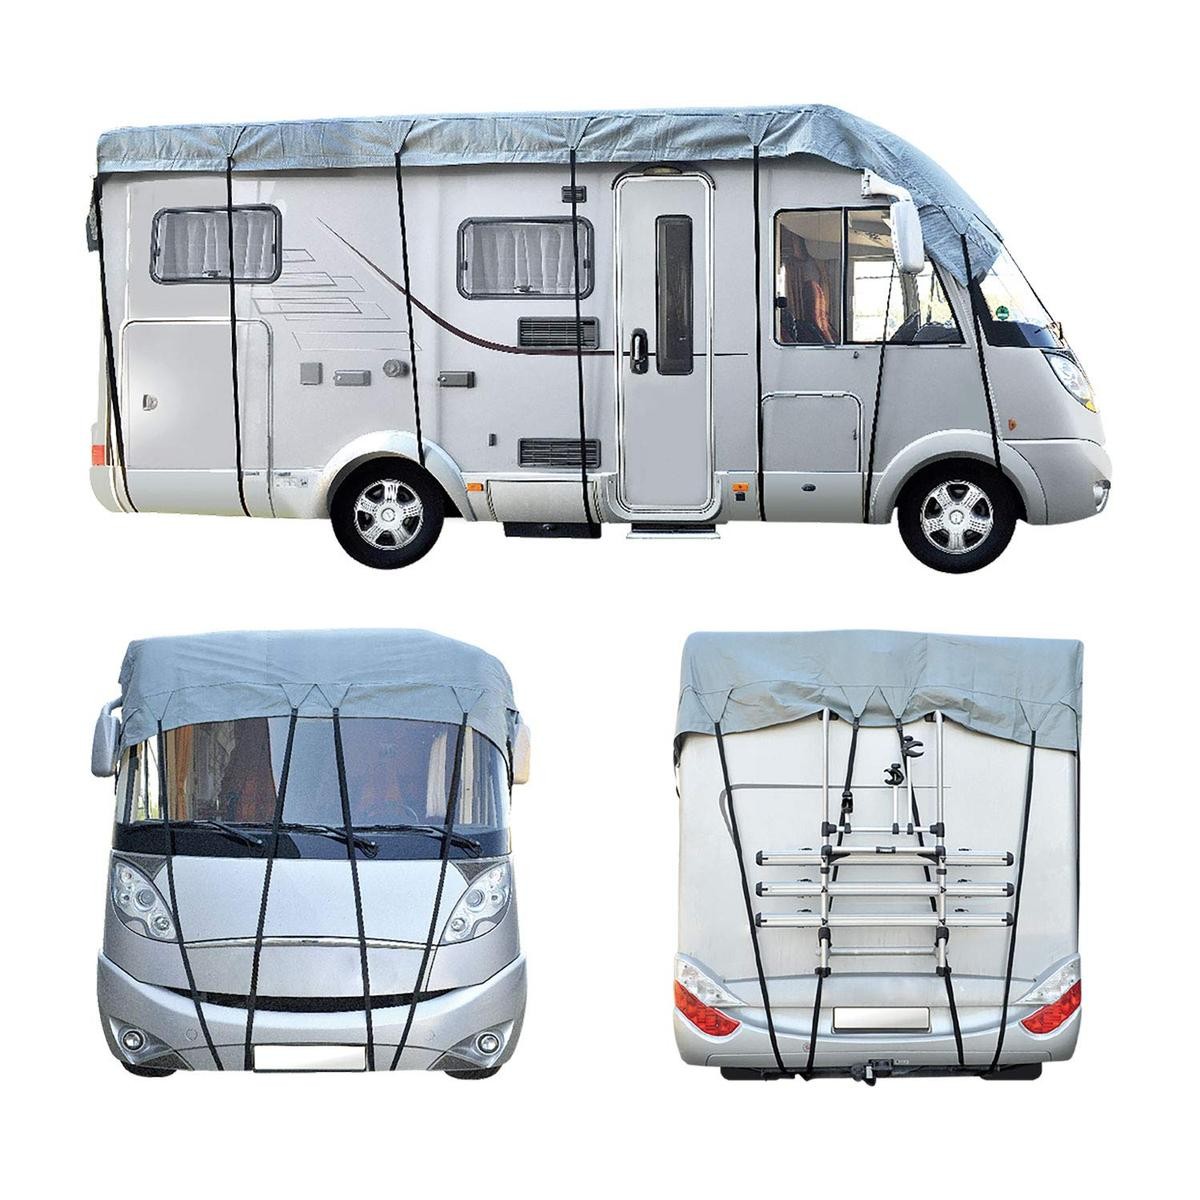 10248 CARTREND Caravan Telo copri camper 10248 ❱❱❱ prezzo e esperienza